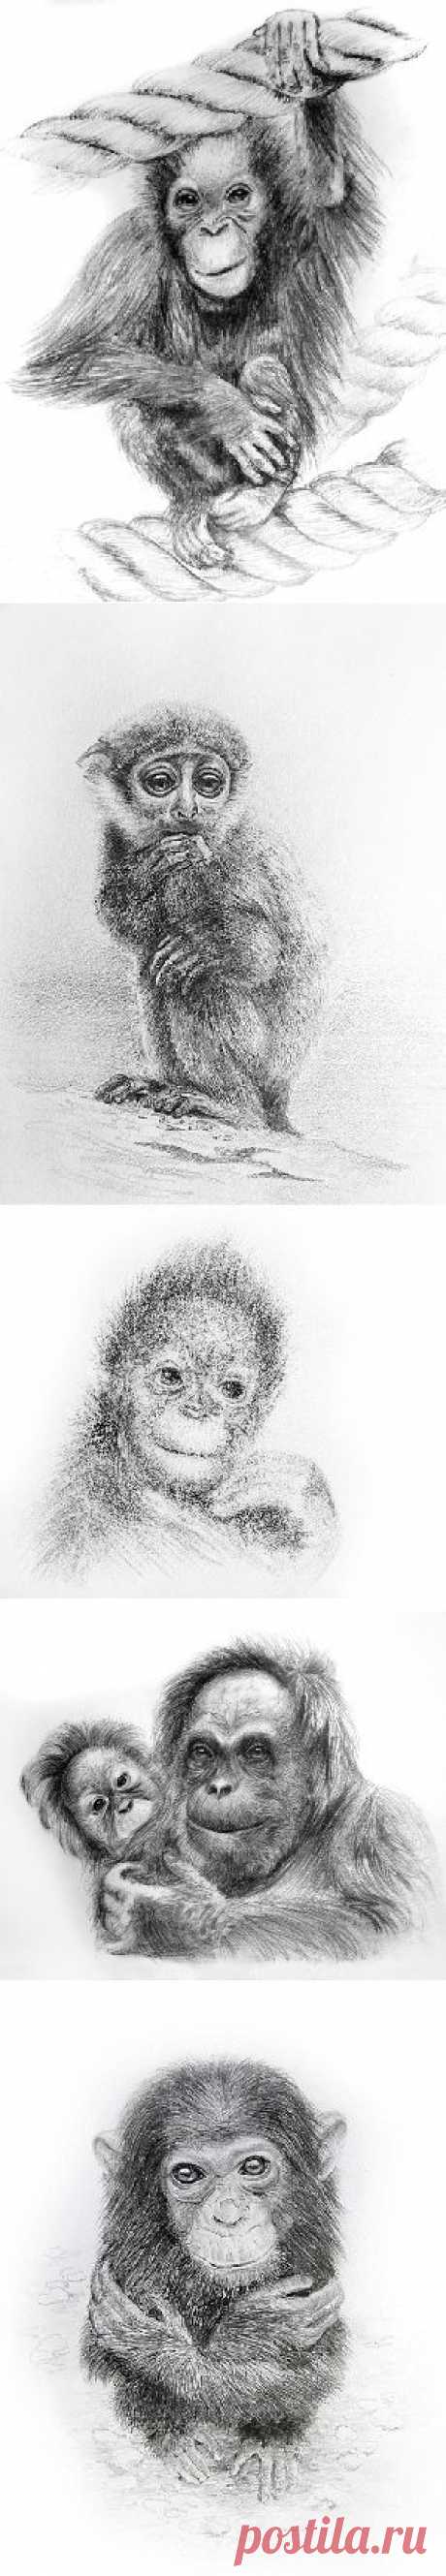 Черно-белые Рисунки с изображением обезьян